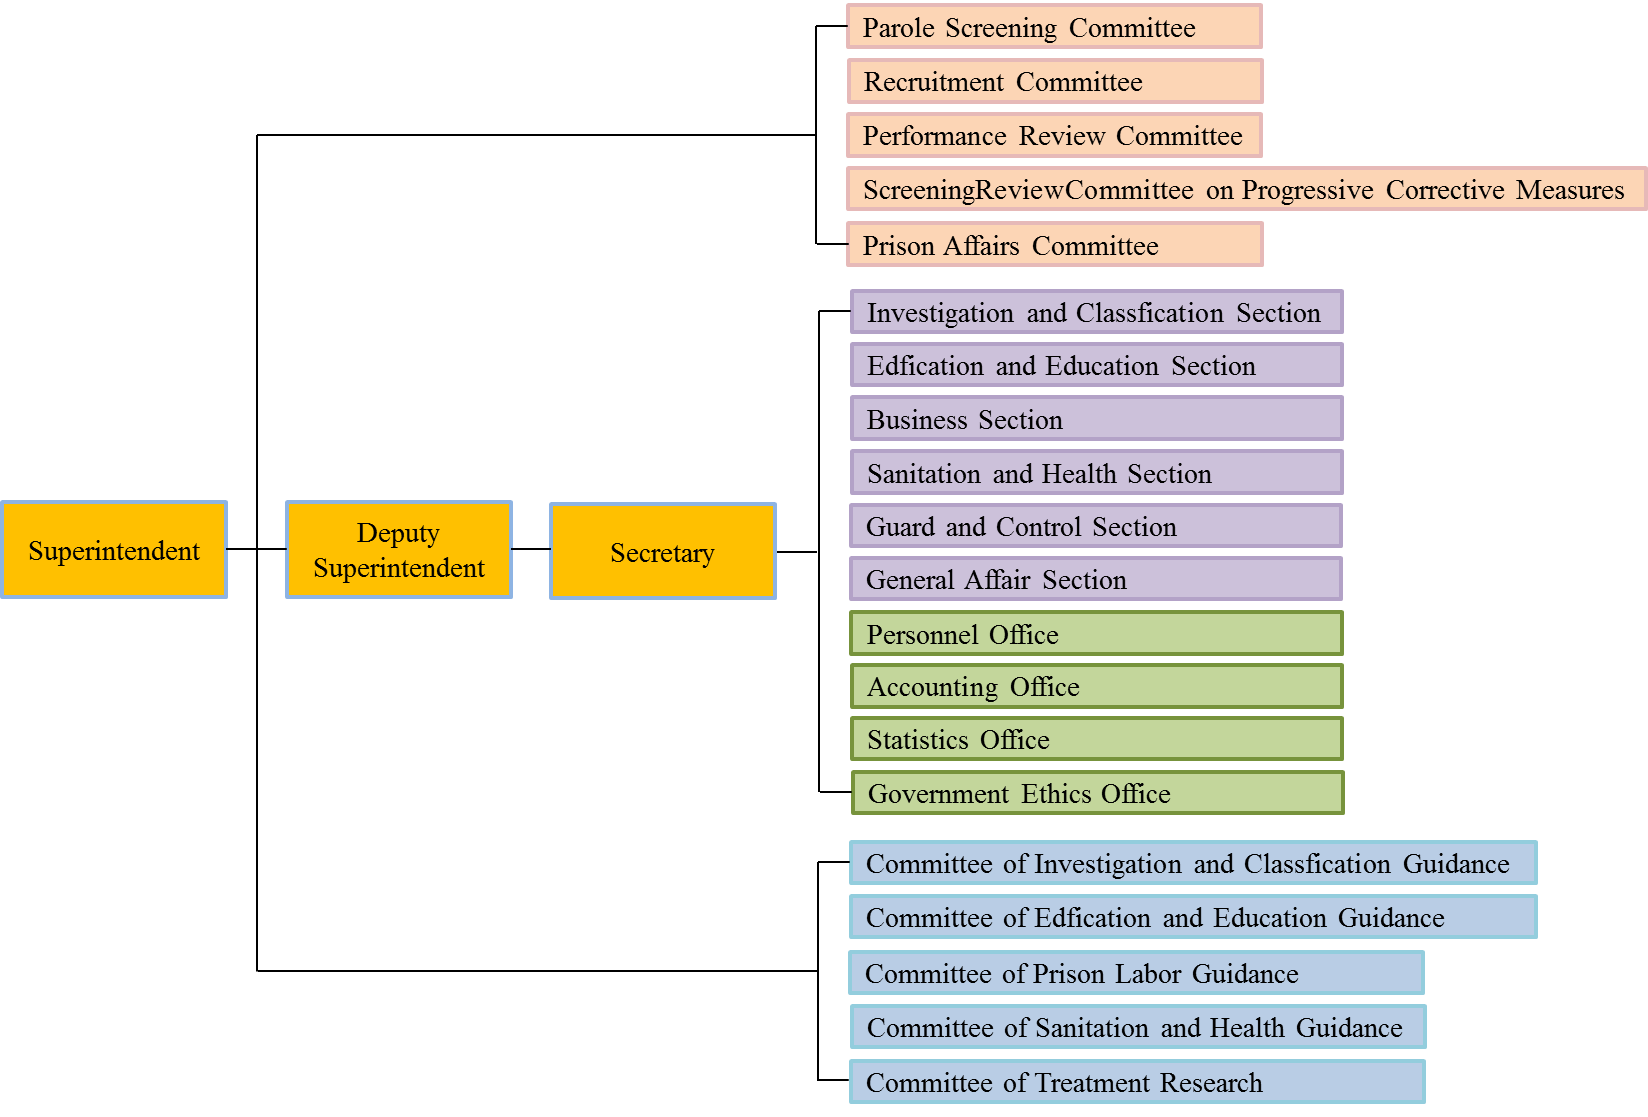 Organization chart